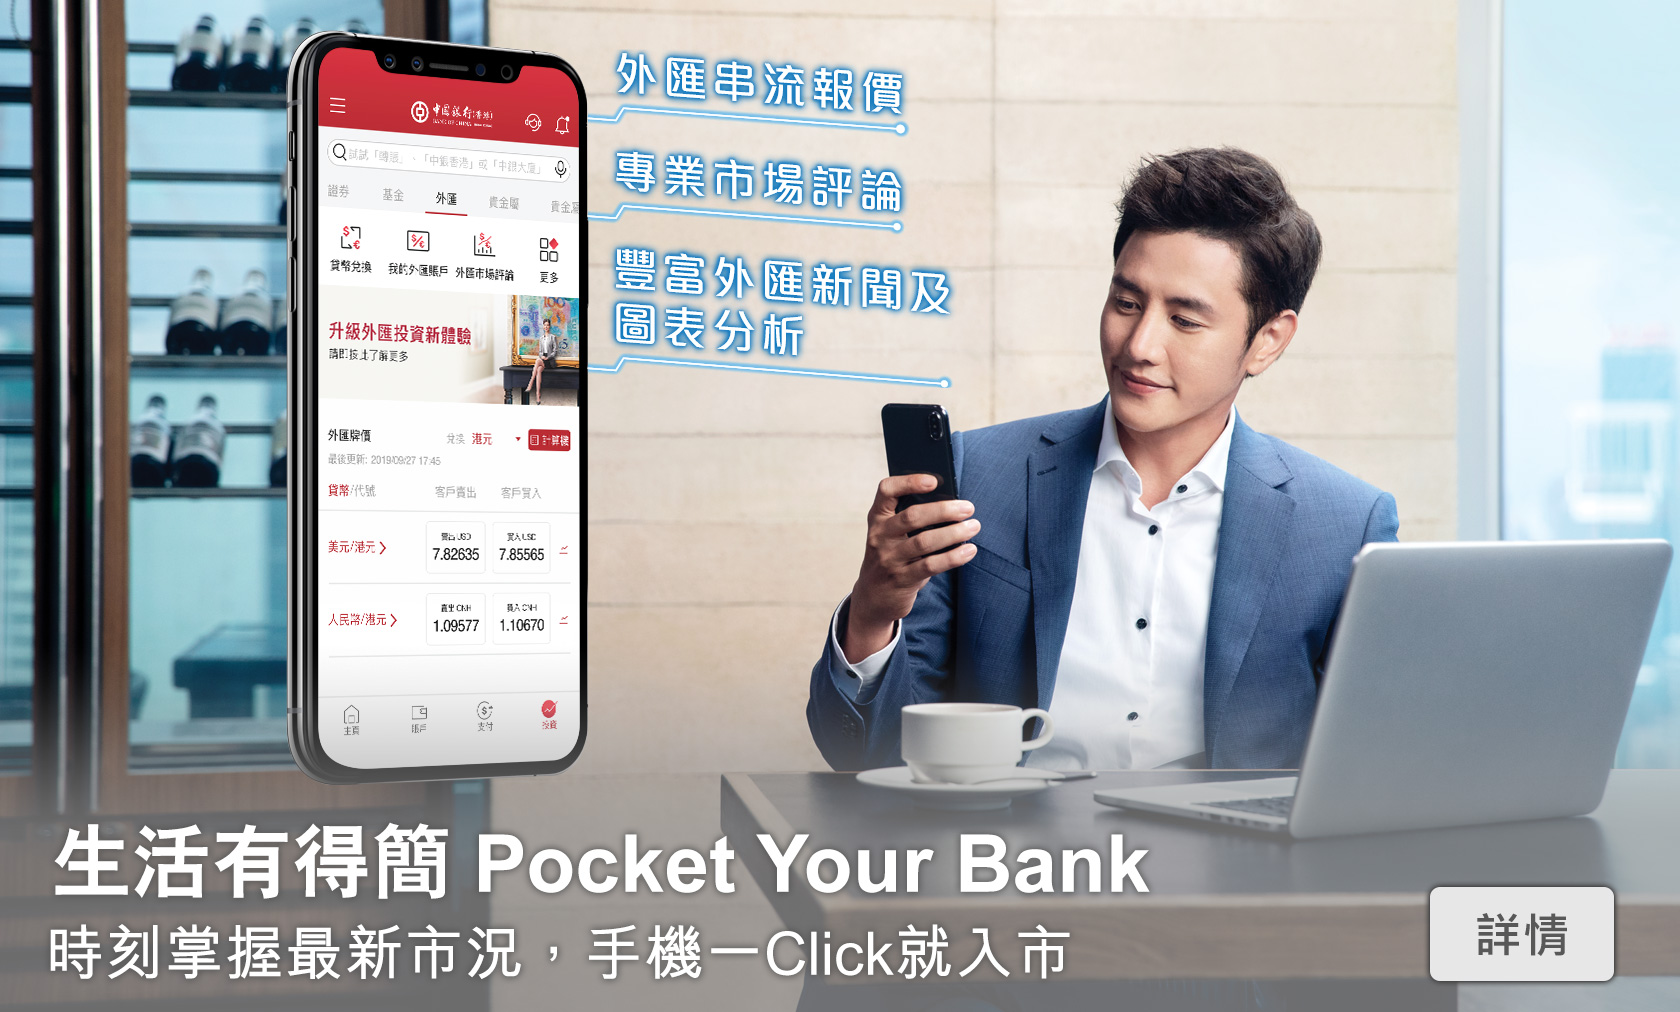 生活有得簡 Pocket Your Bank
        時刻掌握最新市況，手機一Click就入市